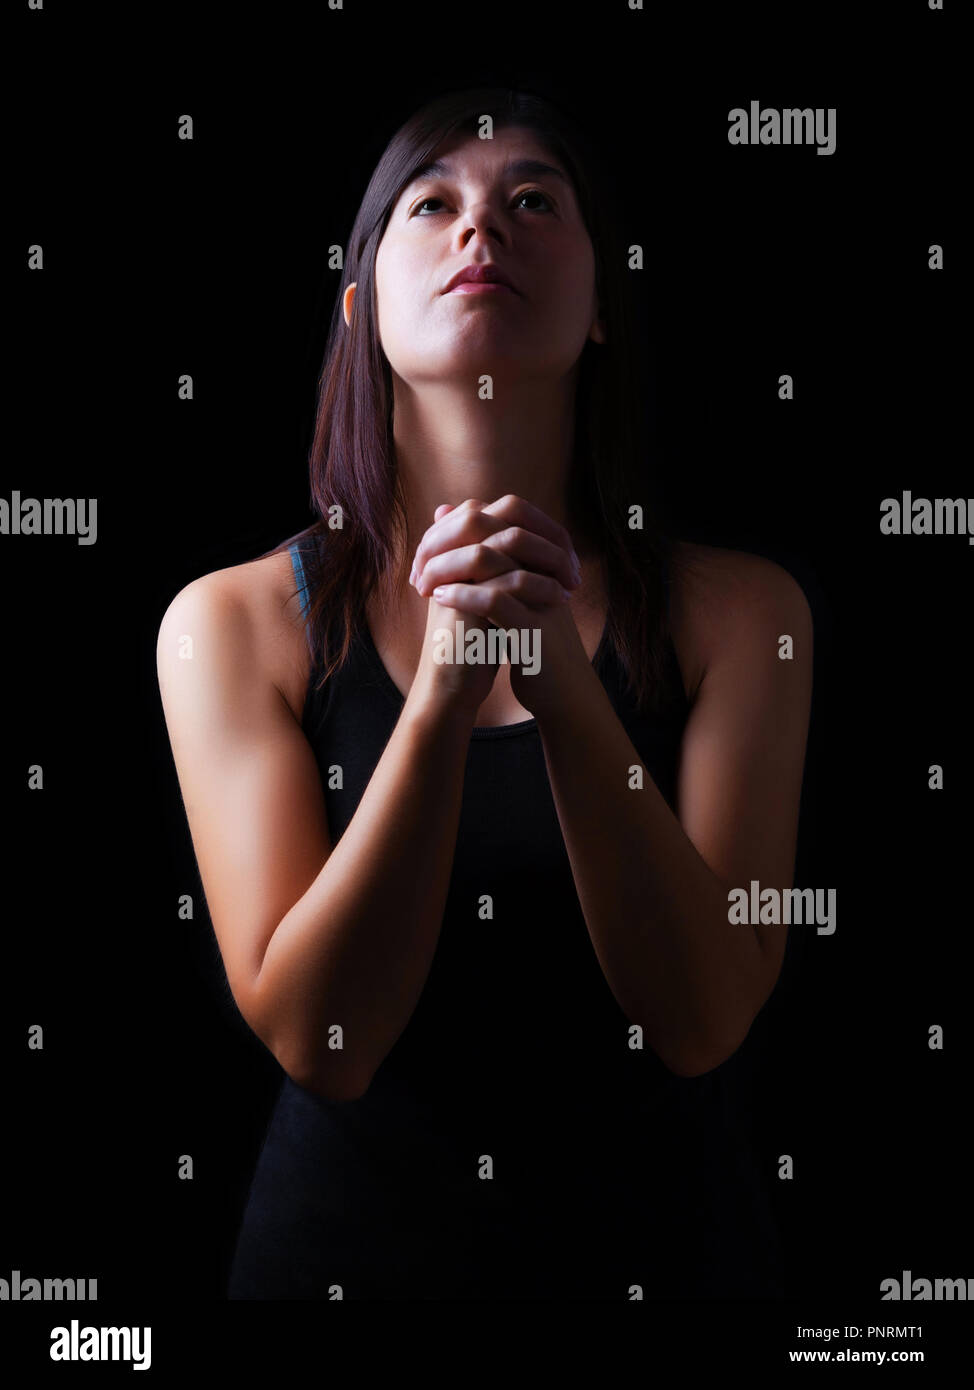 Femme fidèle, priant les mains pliées dans le culte à Dieu avec jusqu'à la ferveur religieuse dans, sur un fond noir. Concept pour la religion, la foi, la prière Banque D'Images